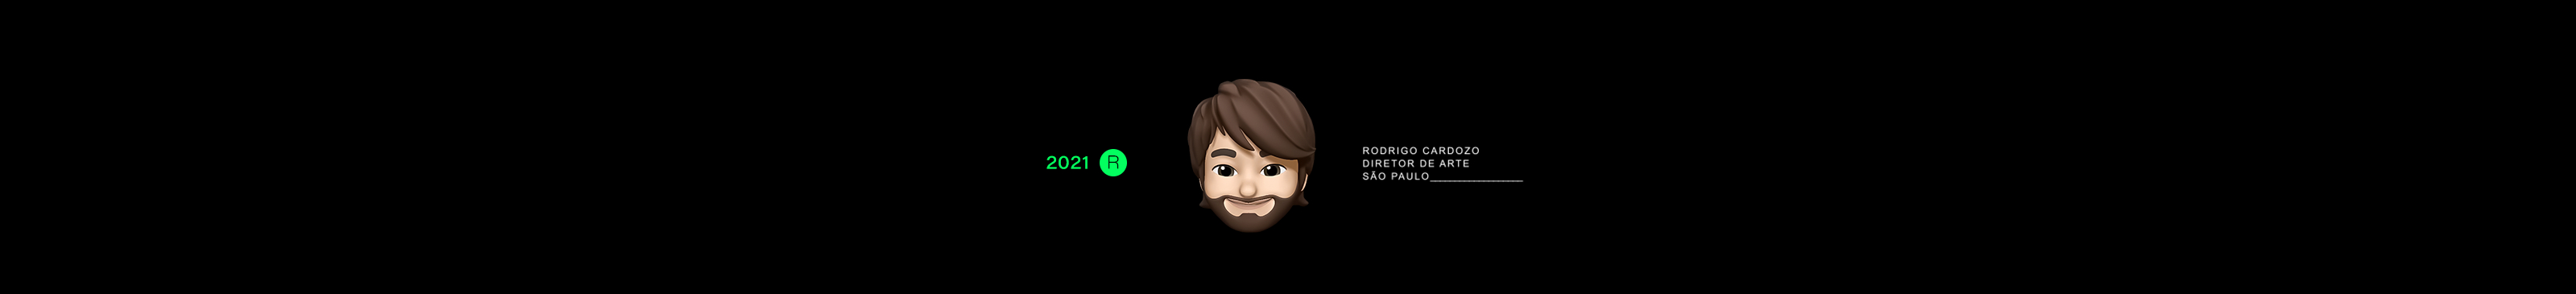 Rodrigo Cardozo's profile banner